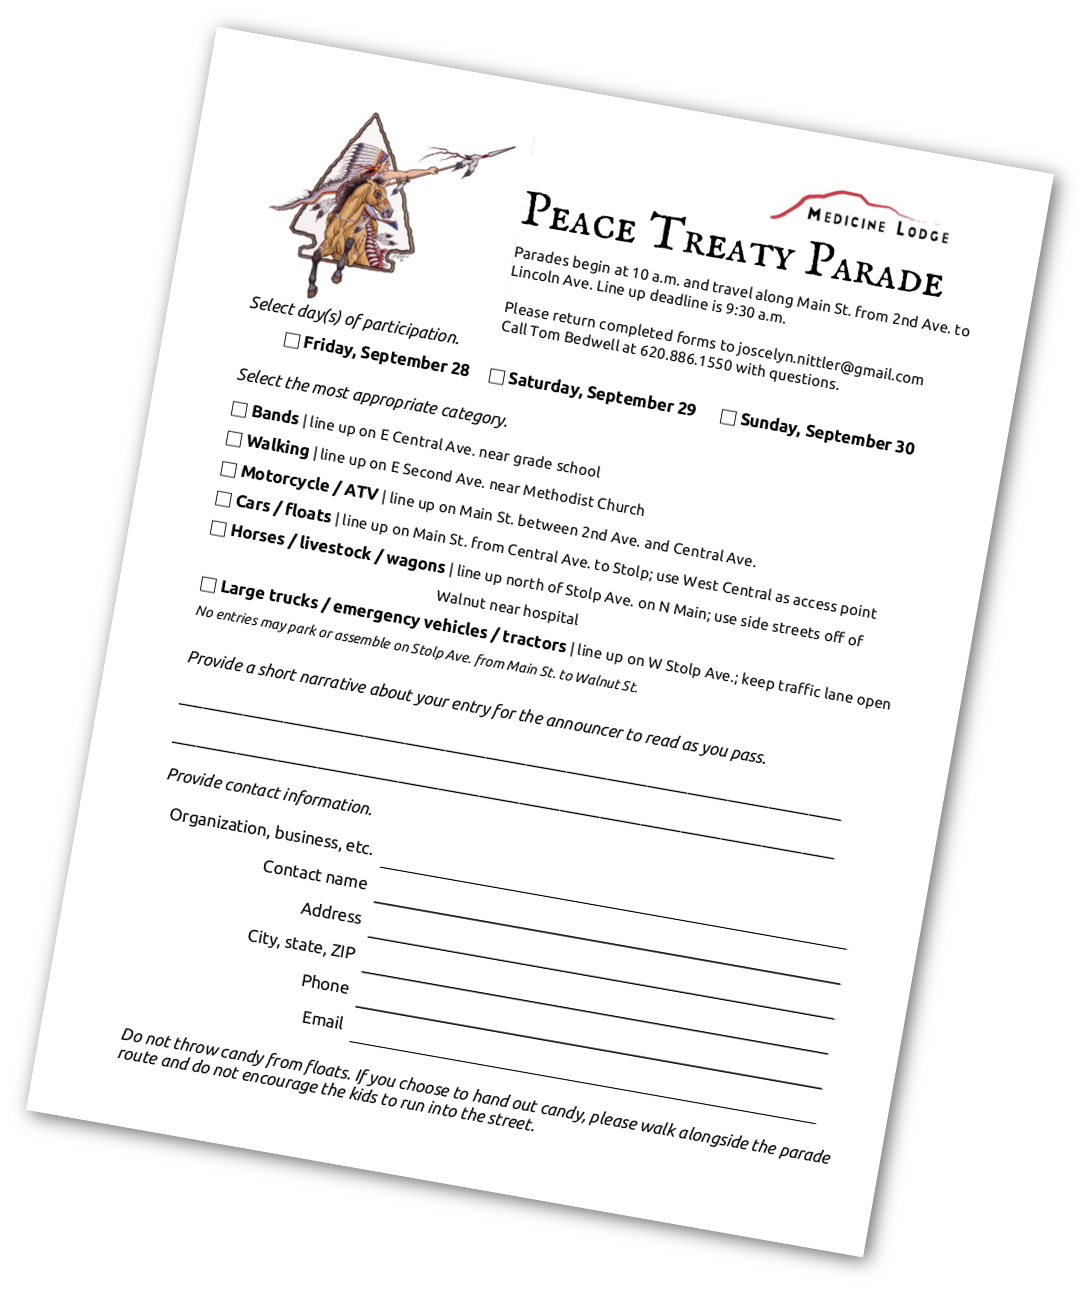 2018 Peace Treaty parade form thumbnail